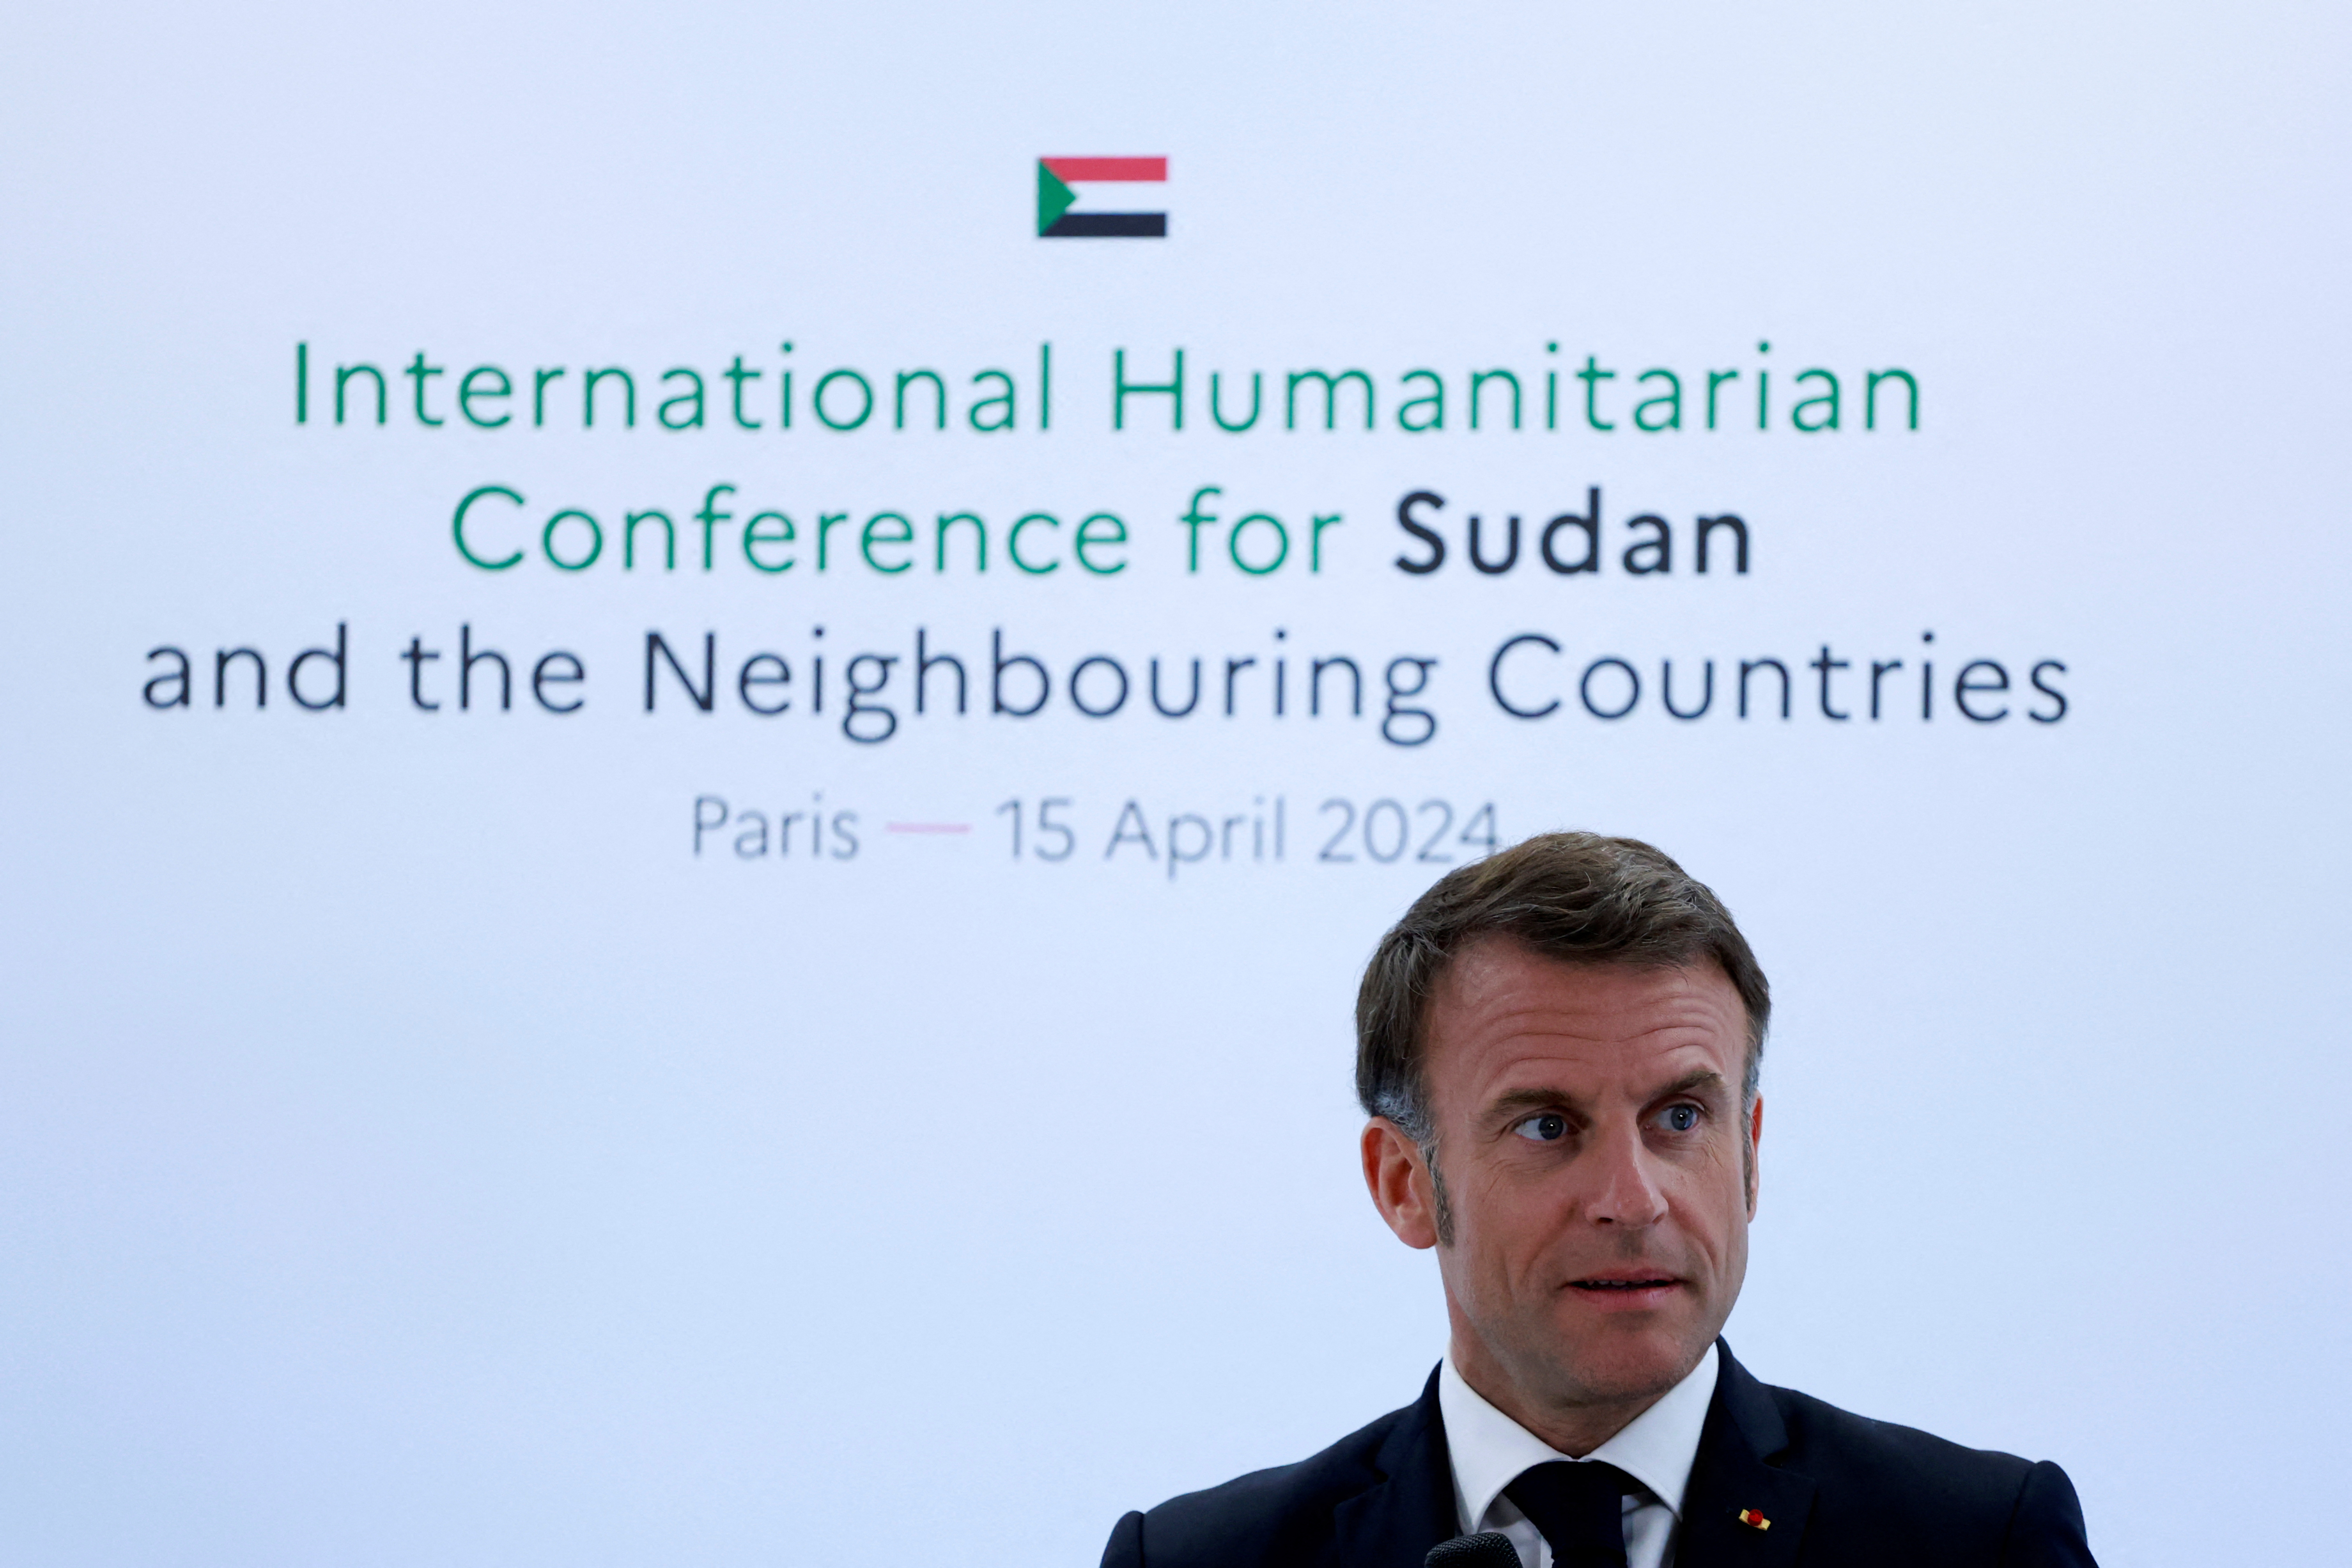 スーダン内戦1年、欧米諸国が飢餓対策で20億ユーロ支援表明